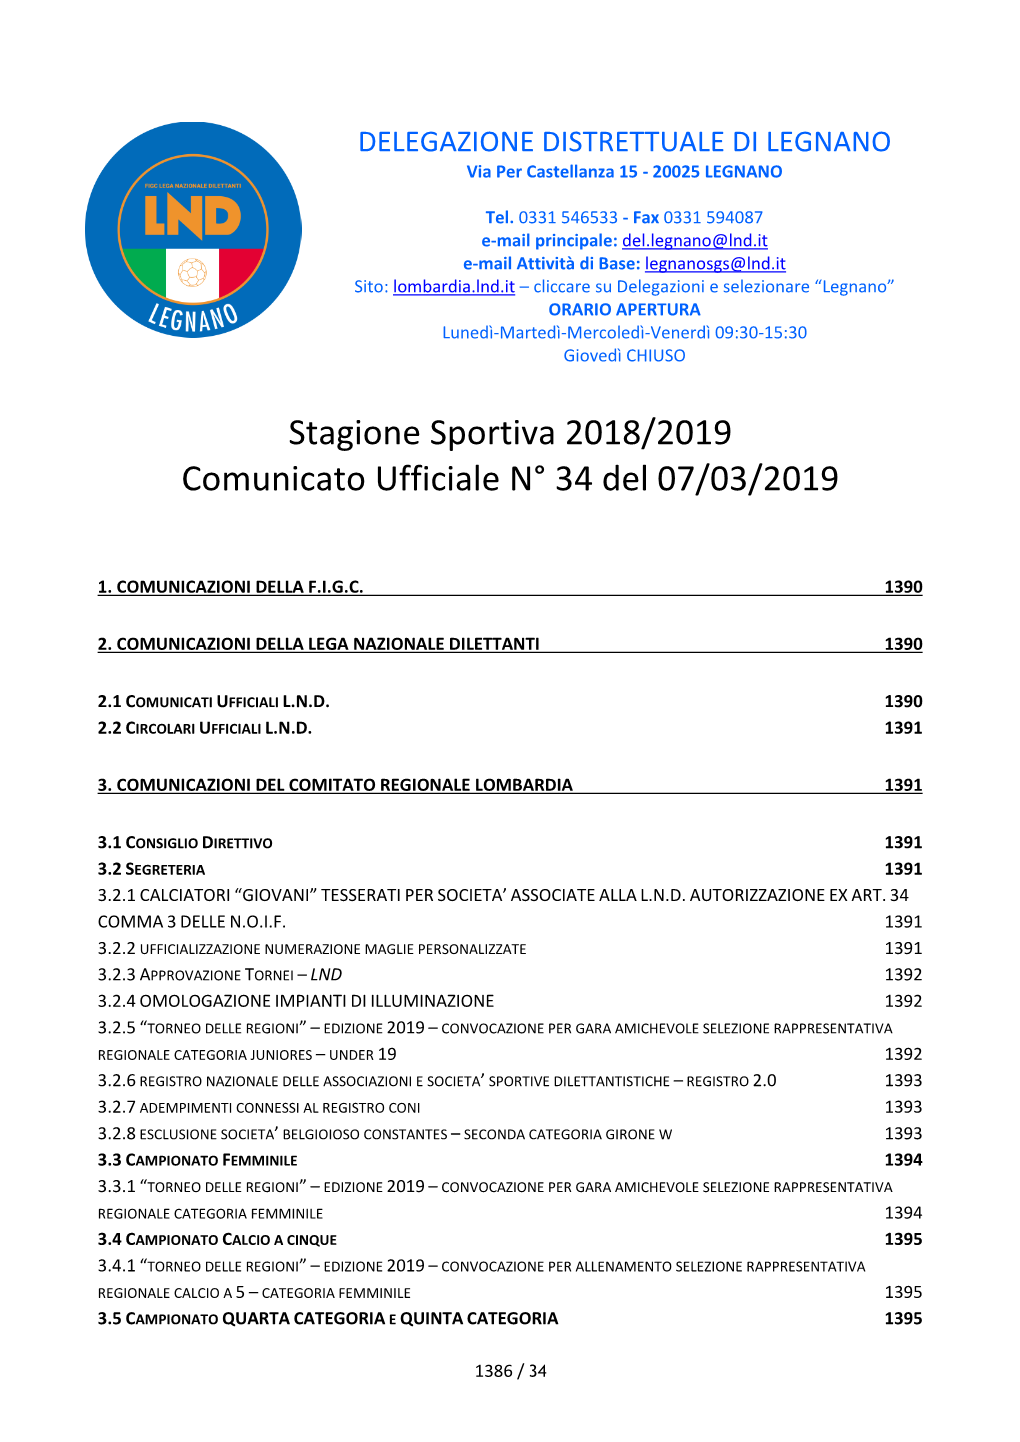 Stagione Sportiva 2018/2019 Comunicato Ufficiale N° 34 Del 07/03/2019